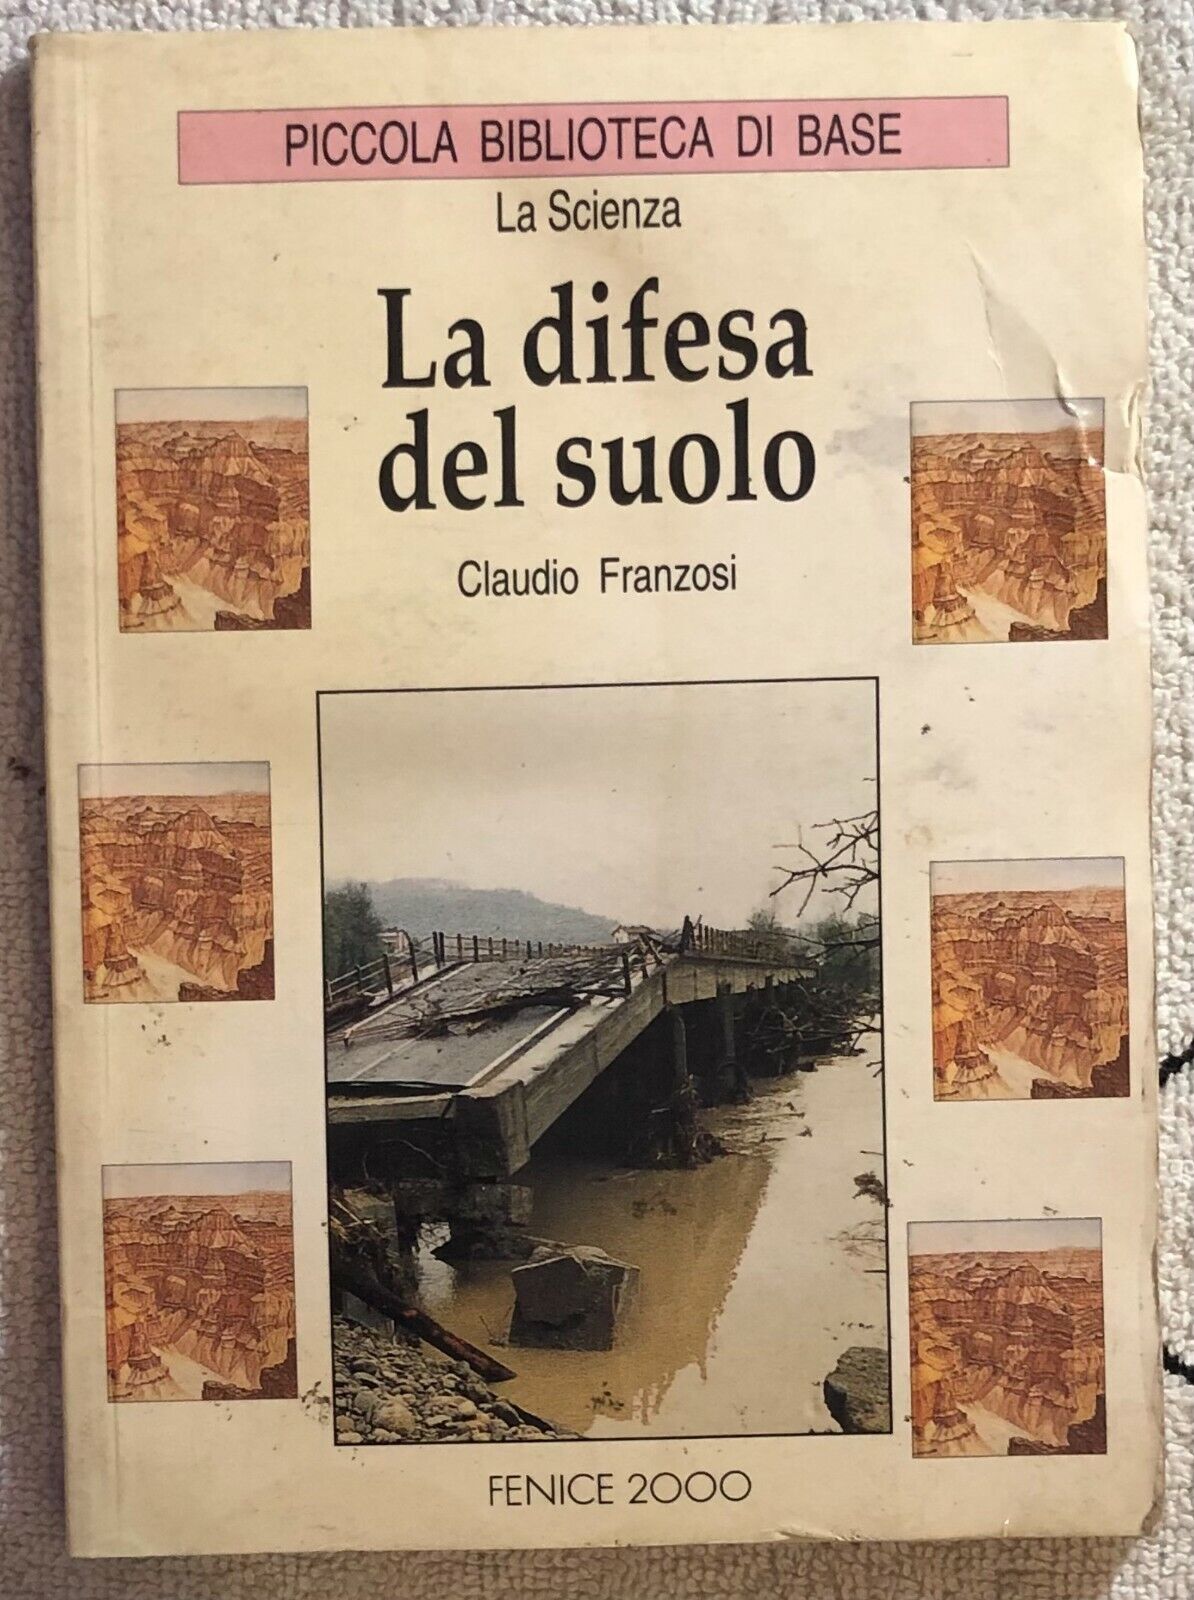 La difesa del suolo di Claudio Franzosi,  1995,  Fenice 2000